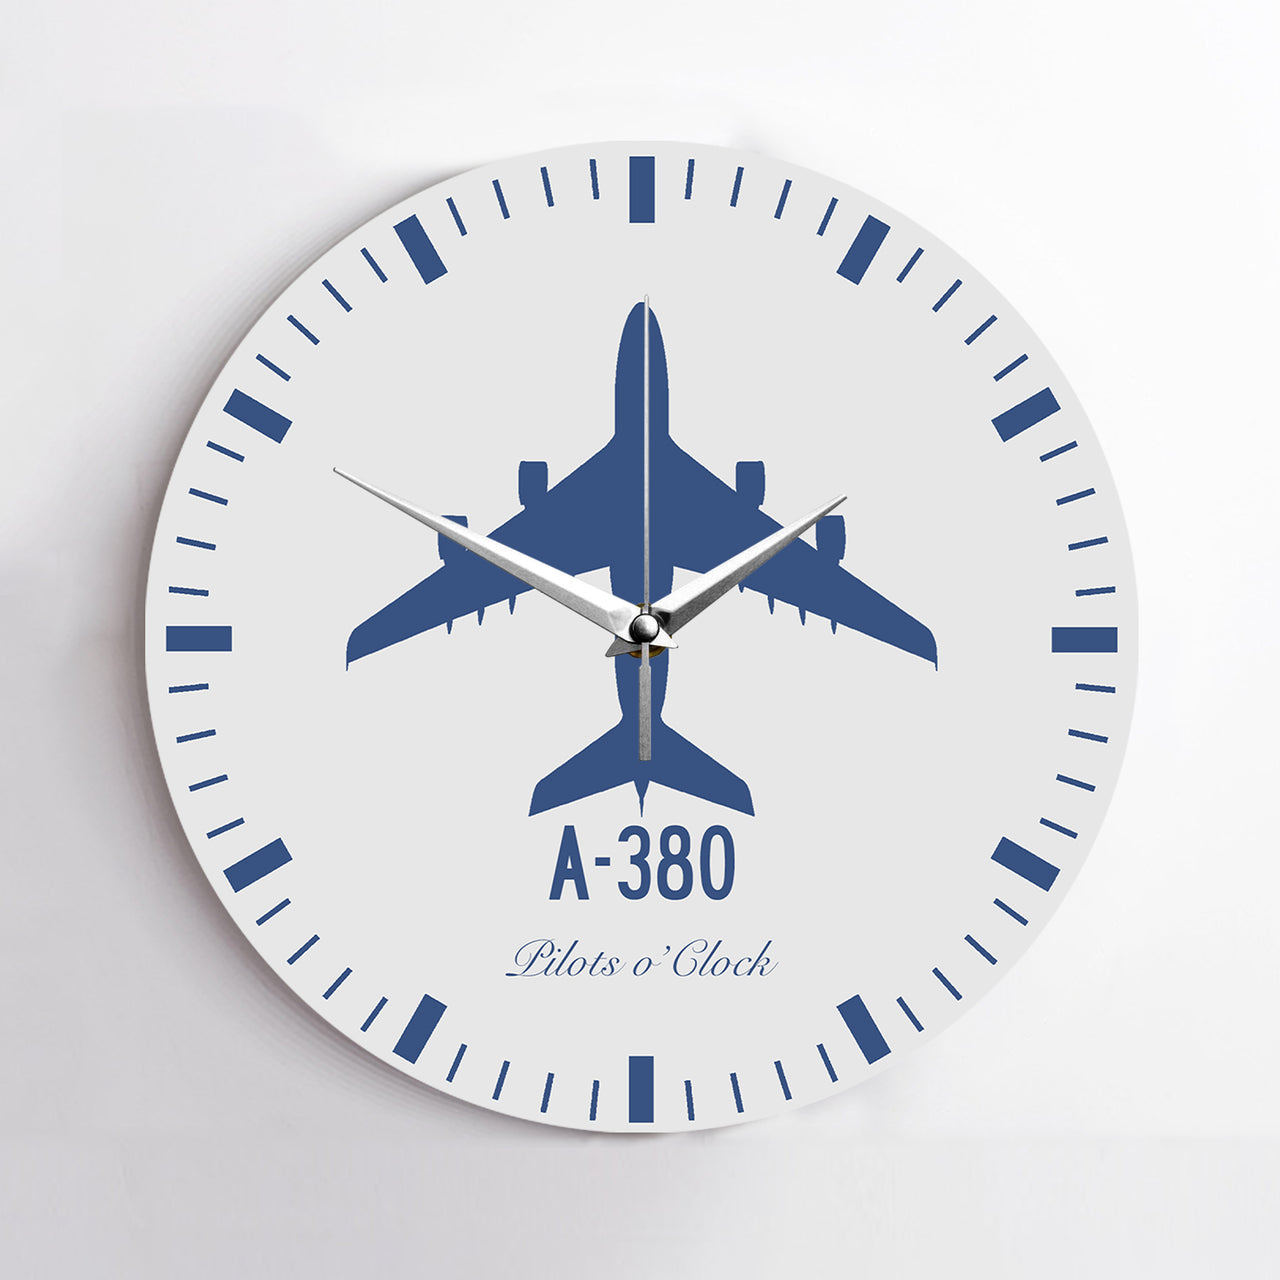 Airbus A380 Printed Wall Clocks